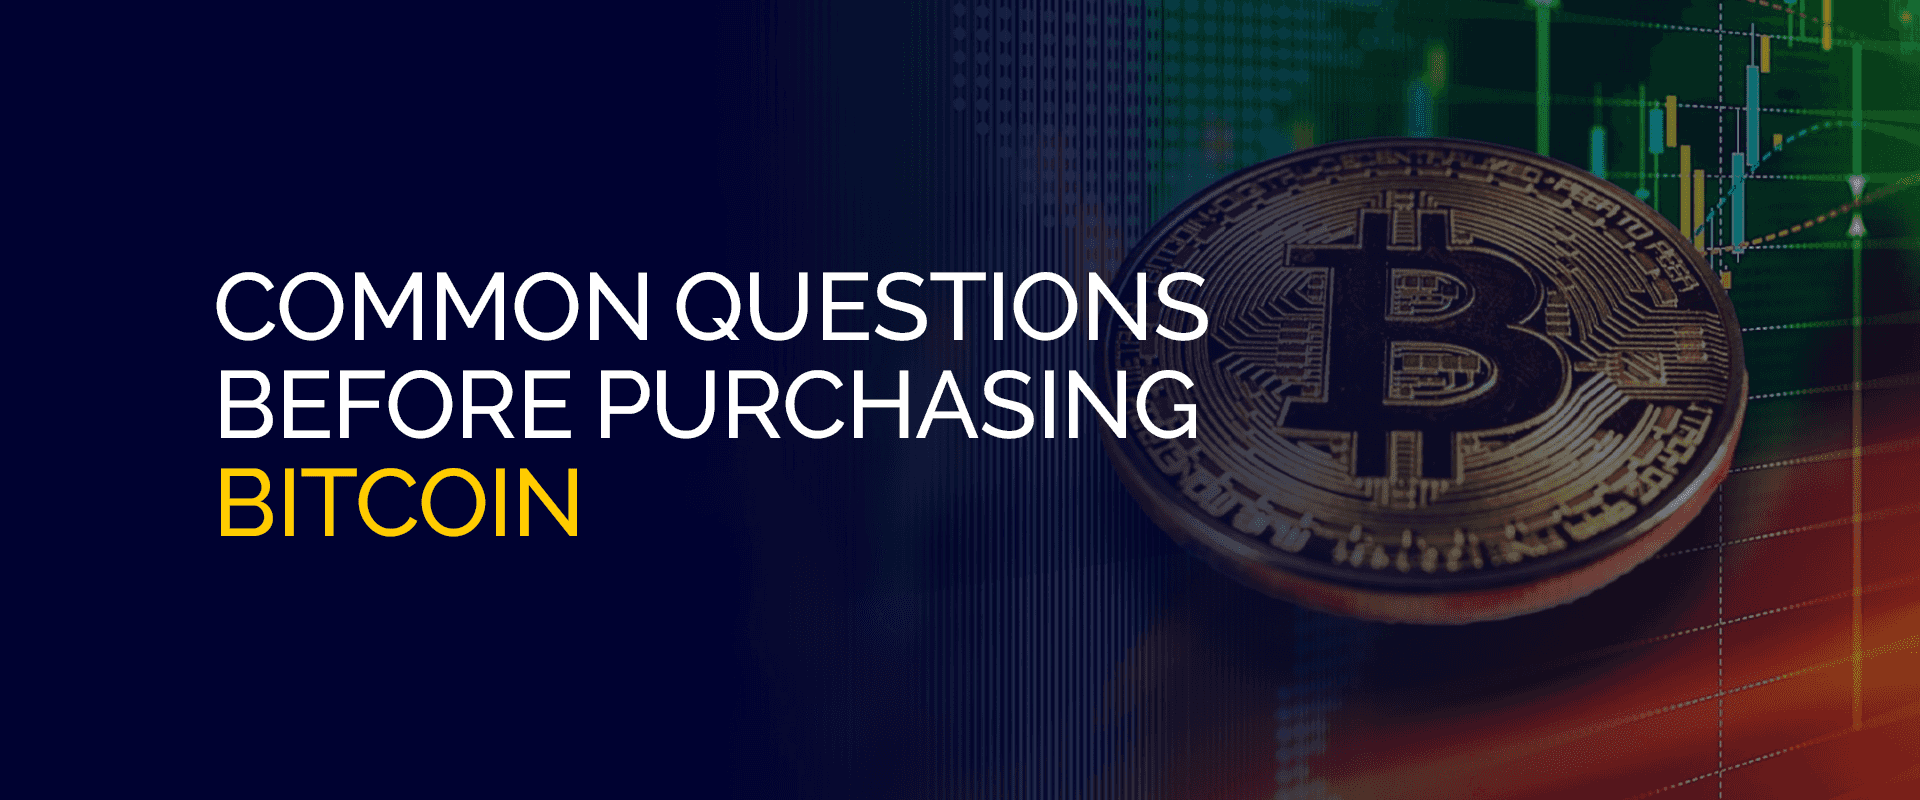 Często zadawane pytania przed zakupem Bitcoina